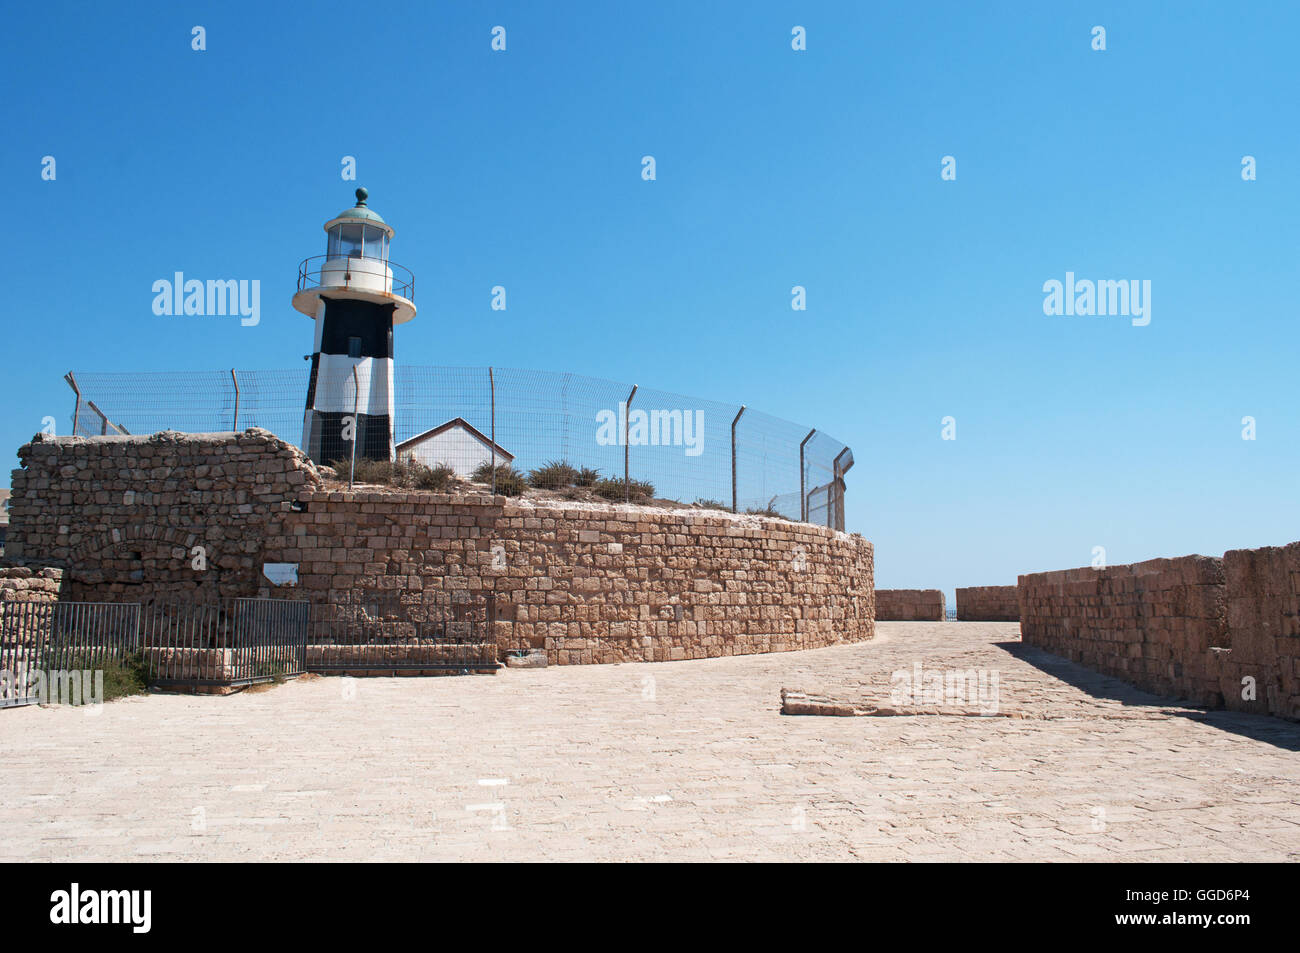 Israele: il Akko luce o luce di Acri, istituito nel 1864, è attivo un faro nel porto di Acri Foto Stock